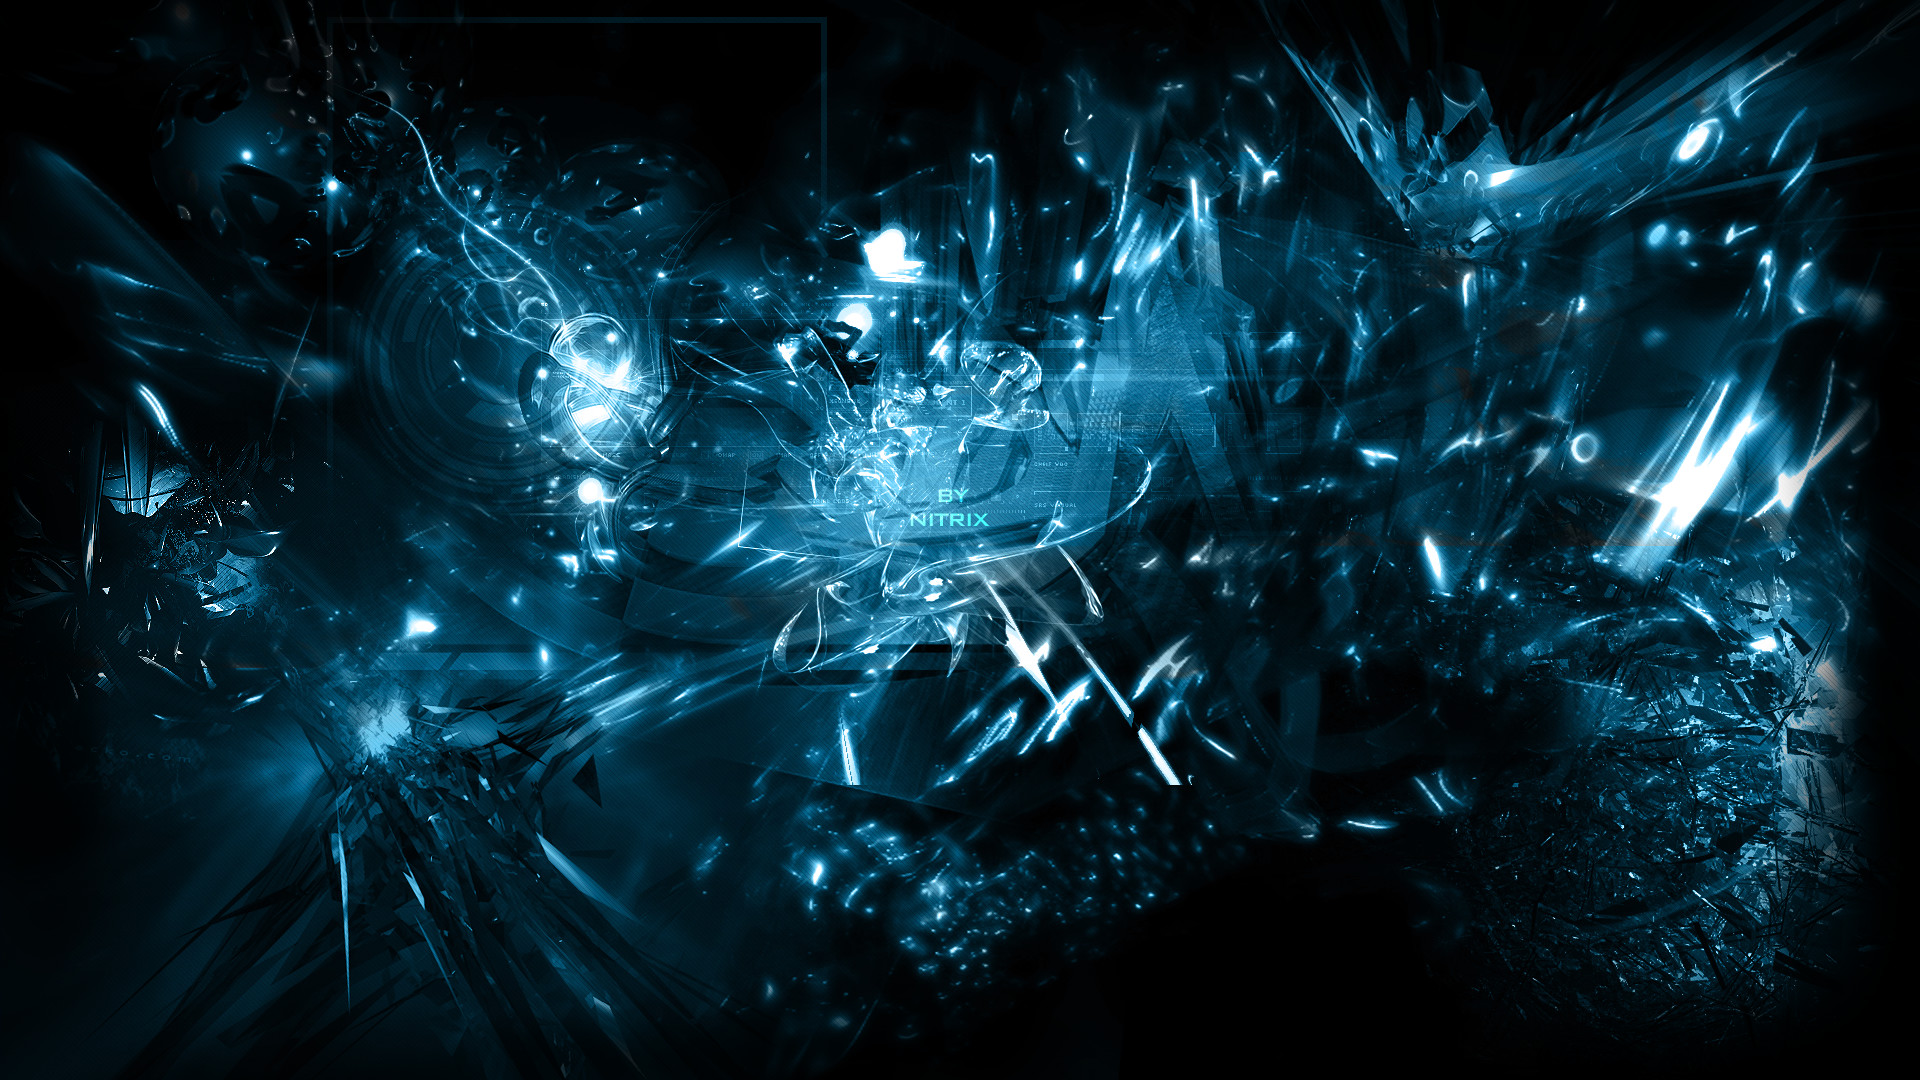 Abstract Gaming Wallpaper 1080p Image